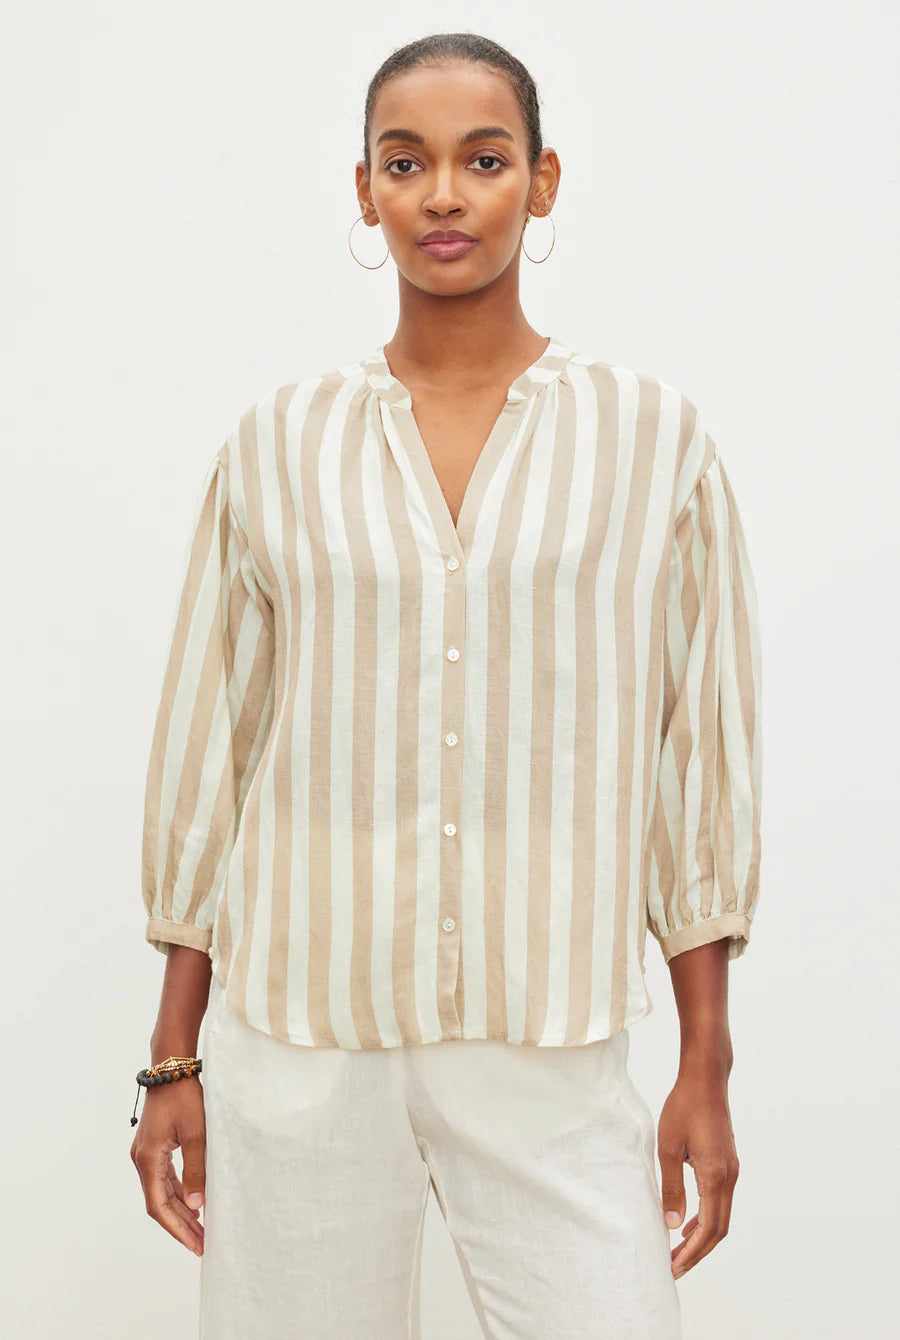 Velvet - Gabby - Striped Linen 3/4 Sleeve Top - Khaki